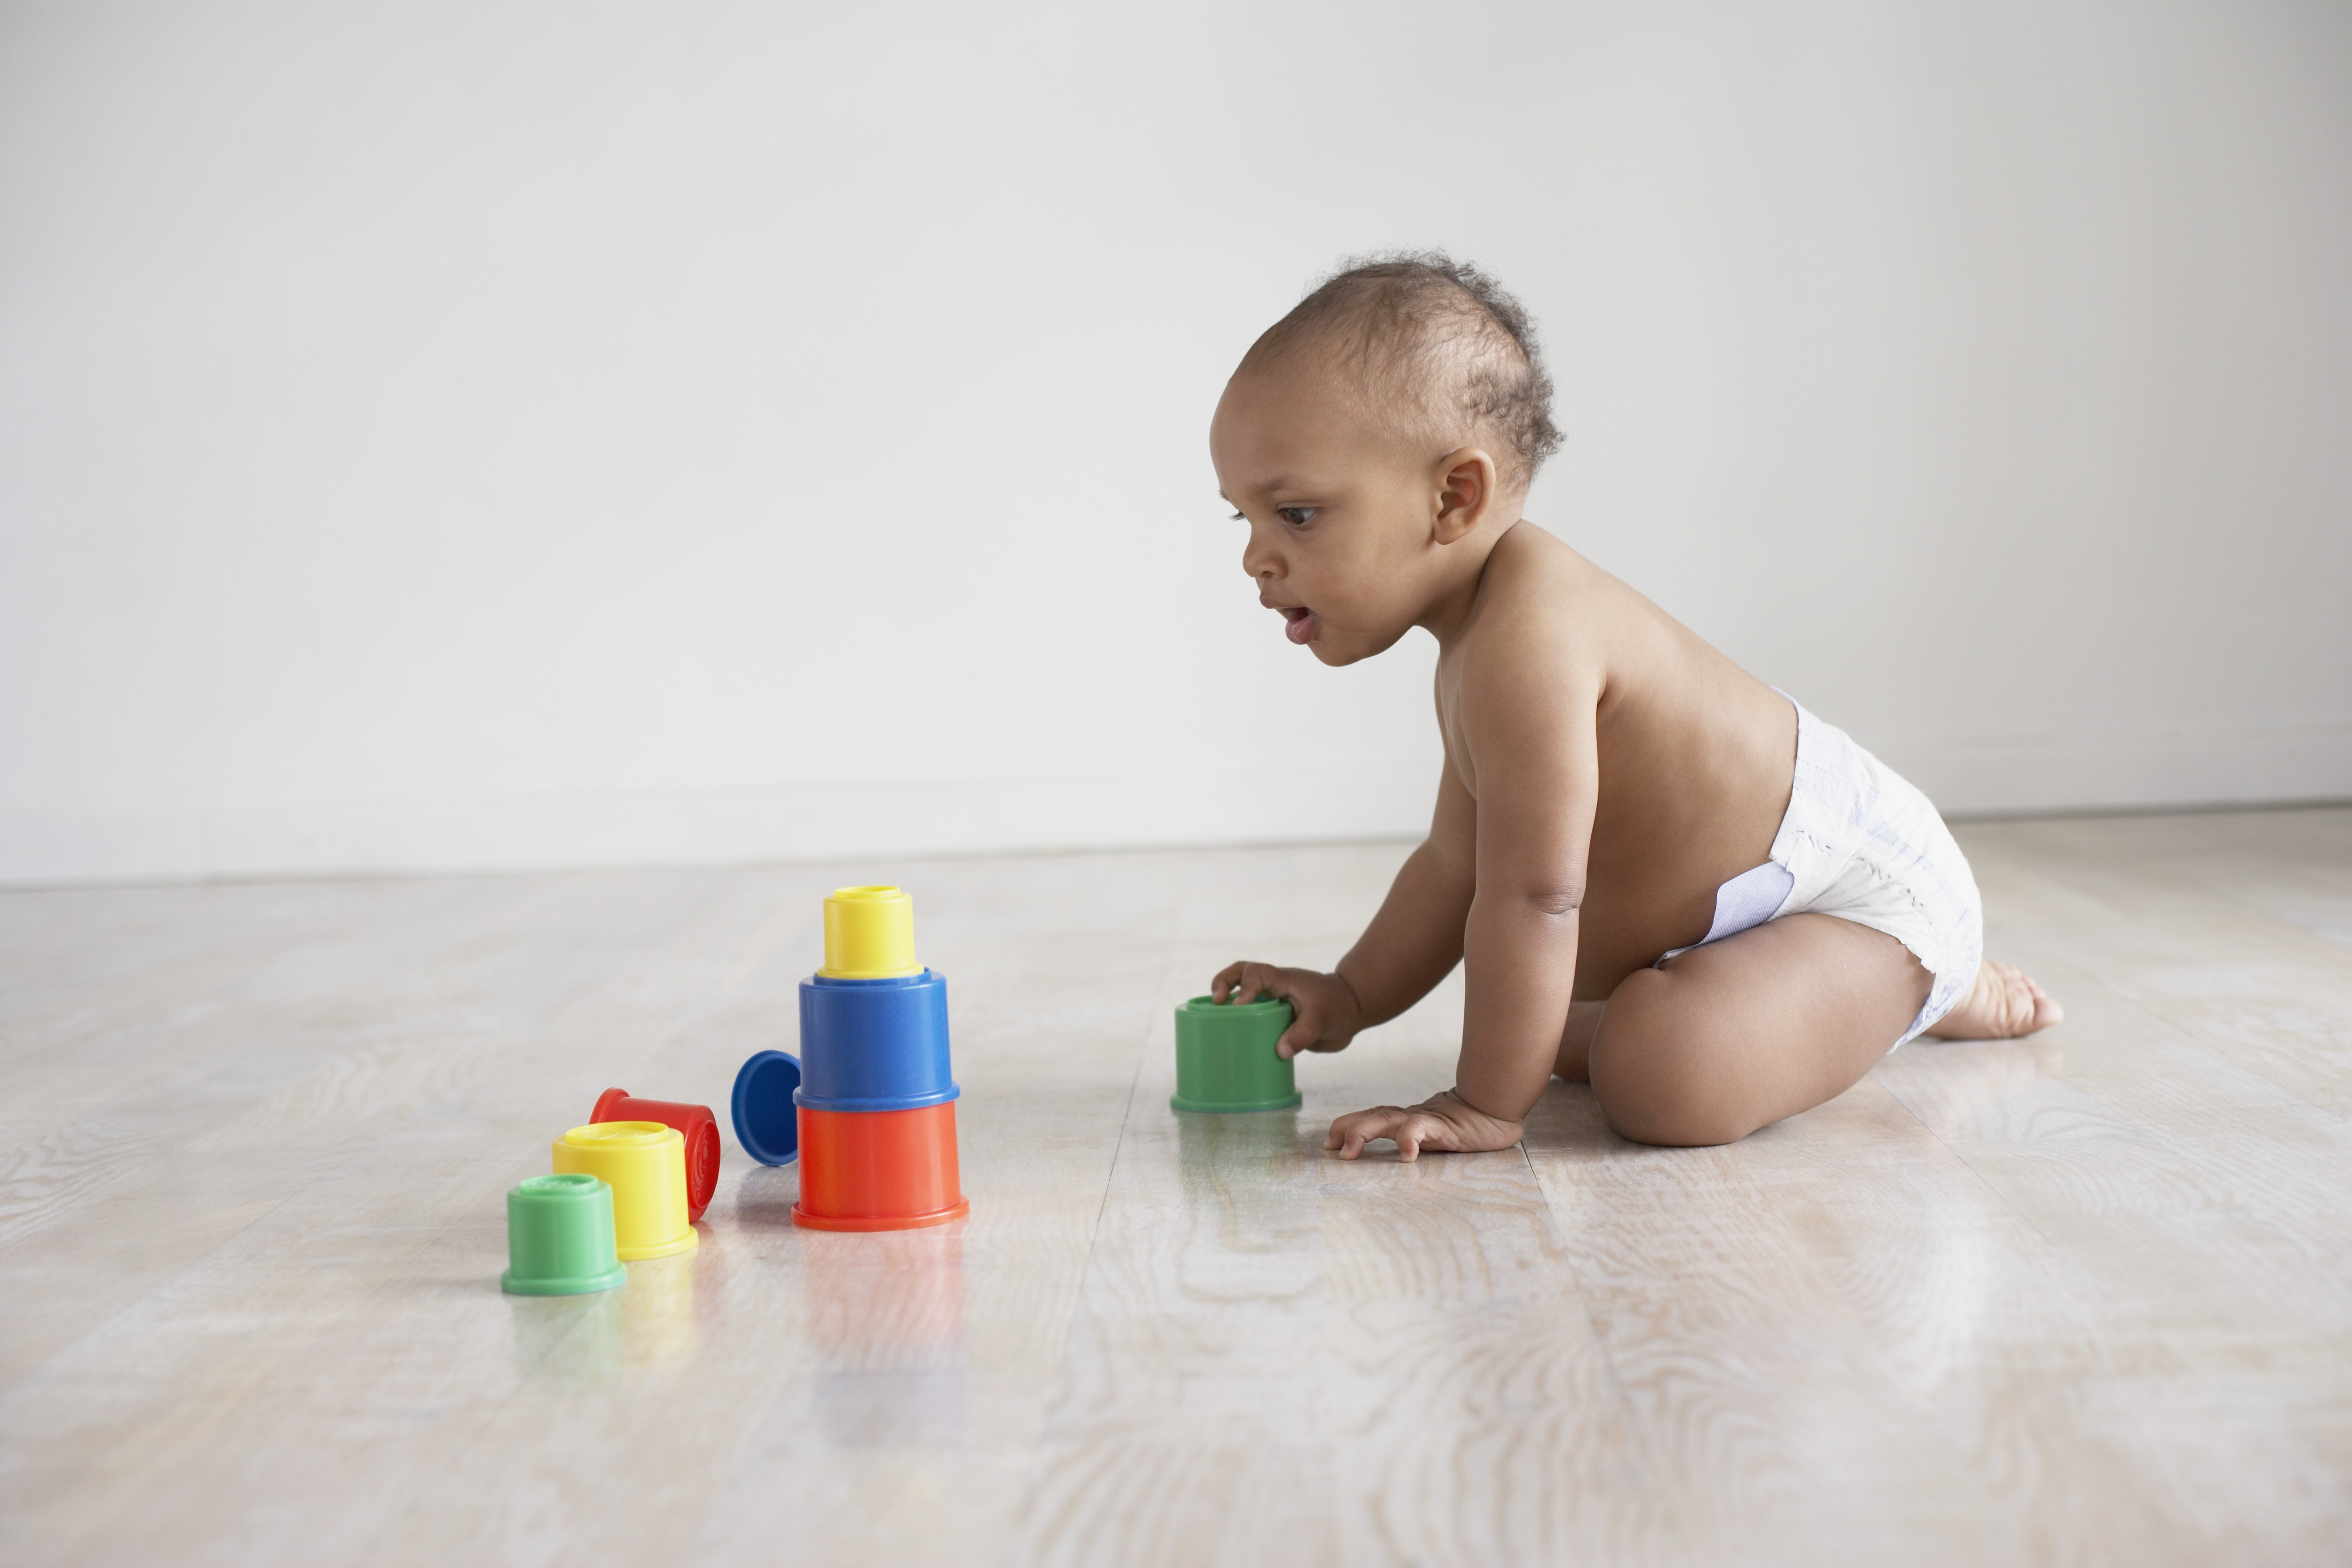 Brincadeiras são ótimas formas de estimular o desenvolvimento do bebê (Foto: Getty Images)